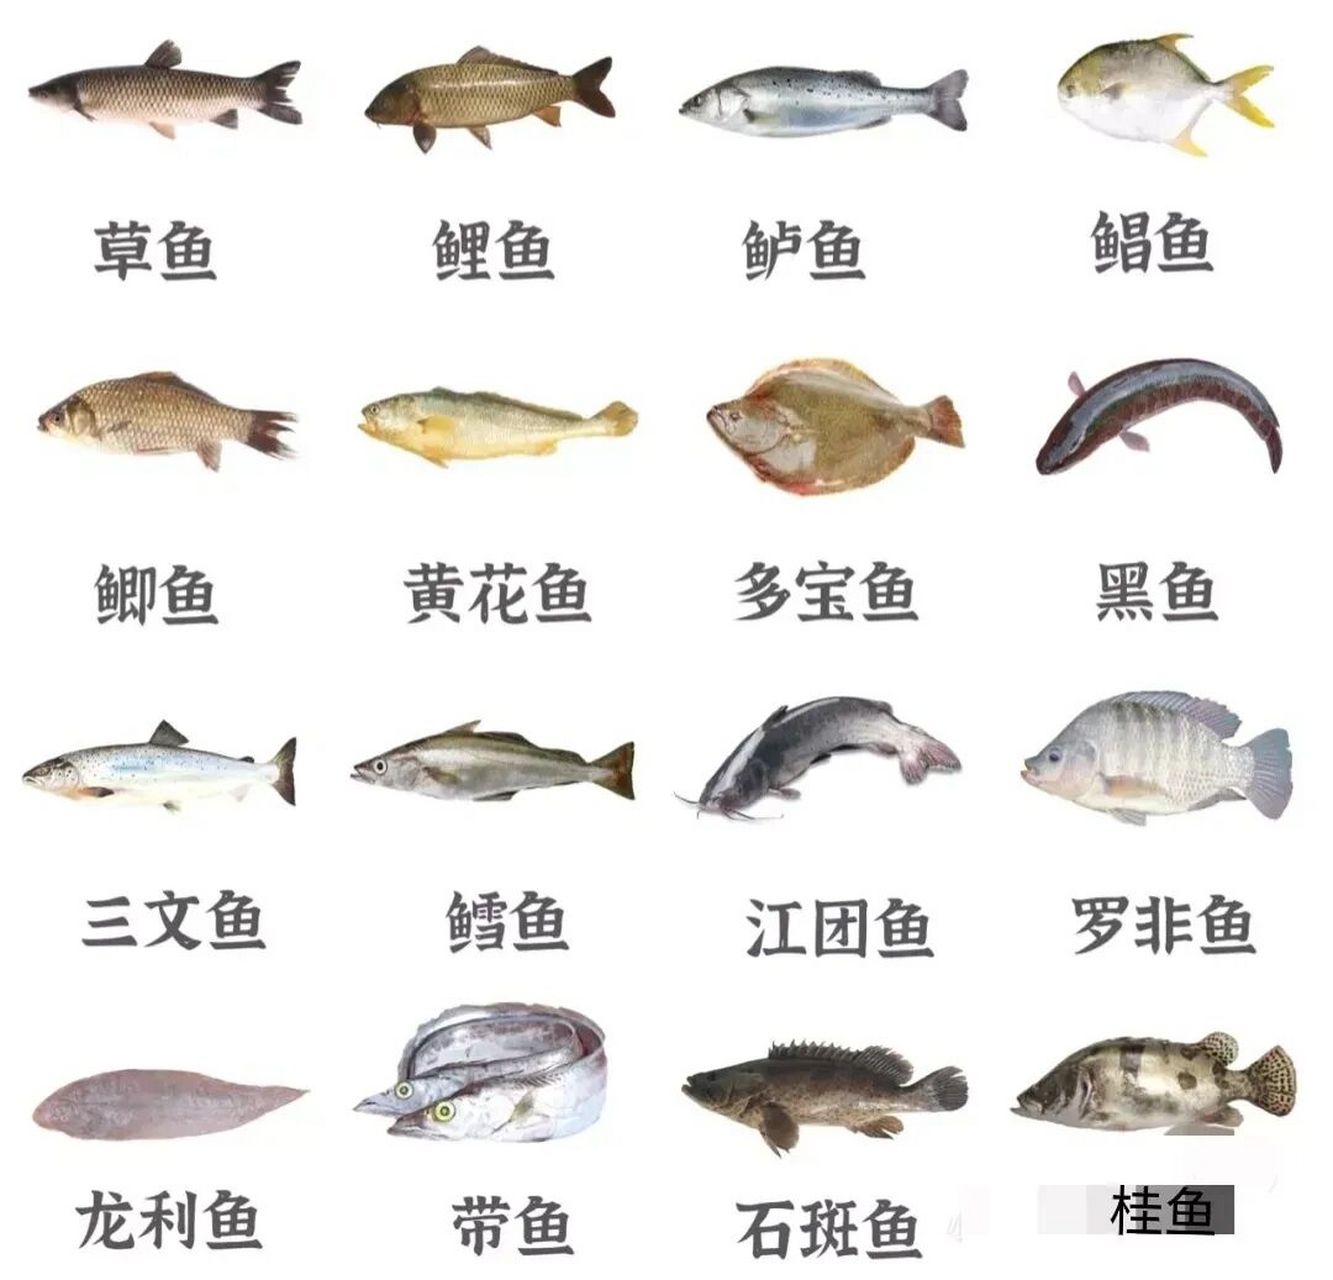 看图识鱼 每次买鱼都分不清种类 只知鱼名 不知鱼形 有了图片 一目了